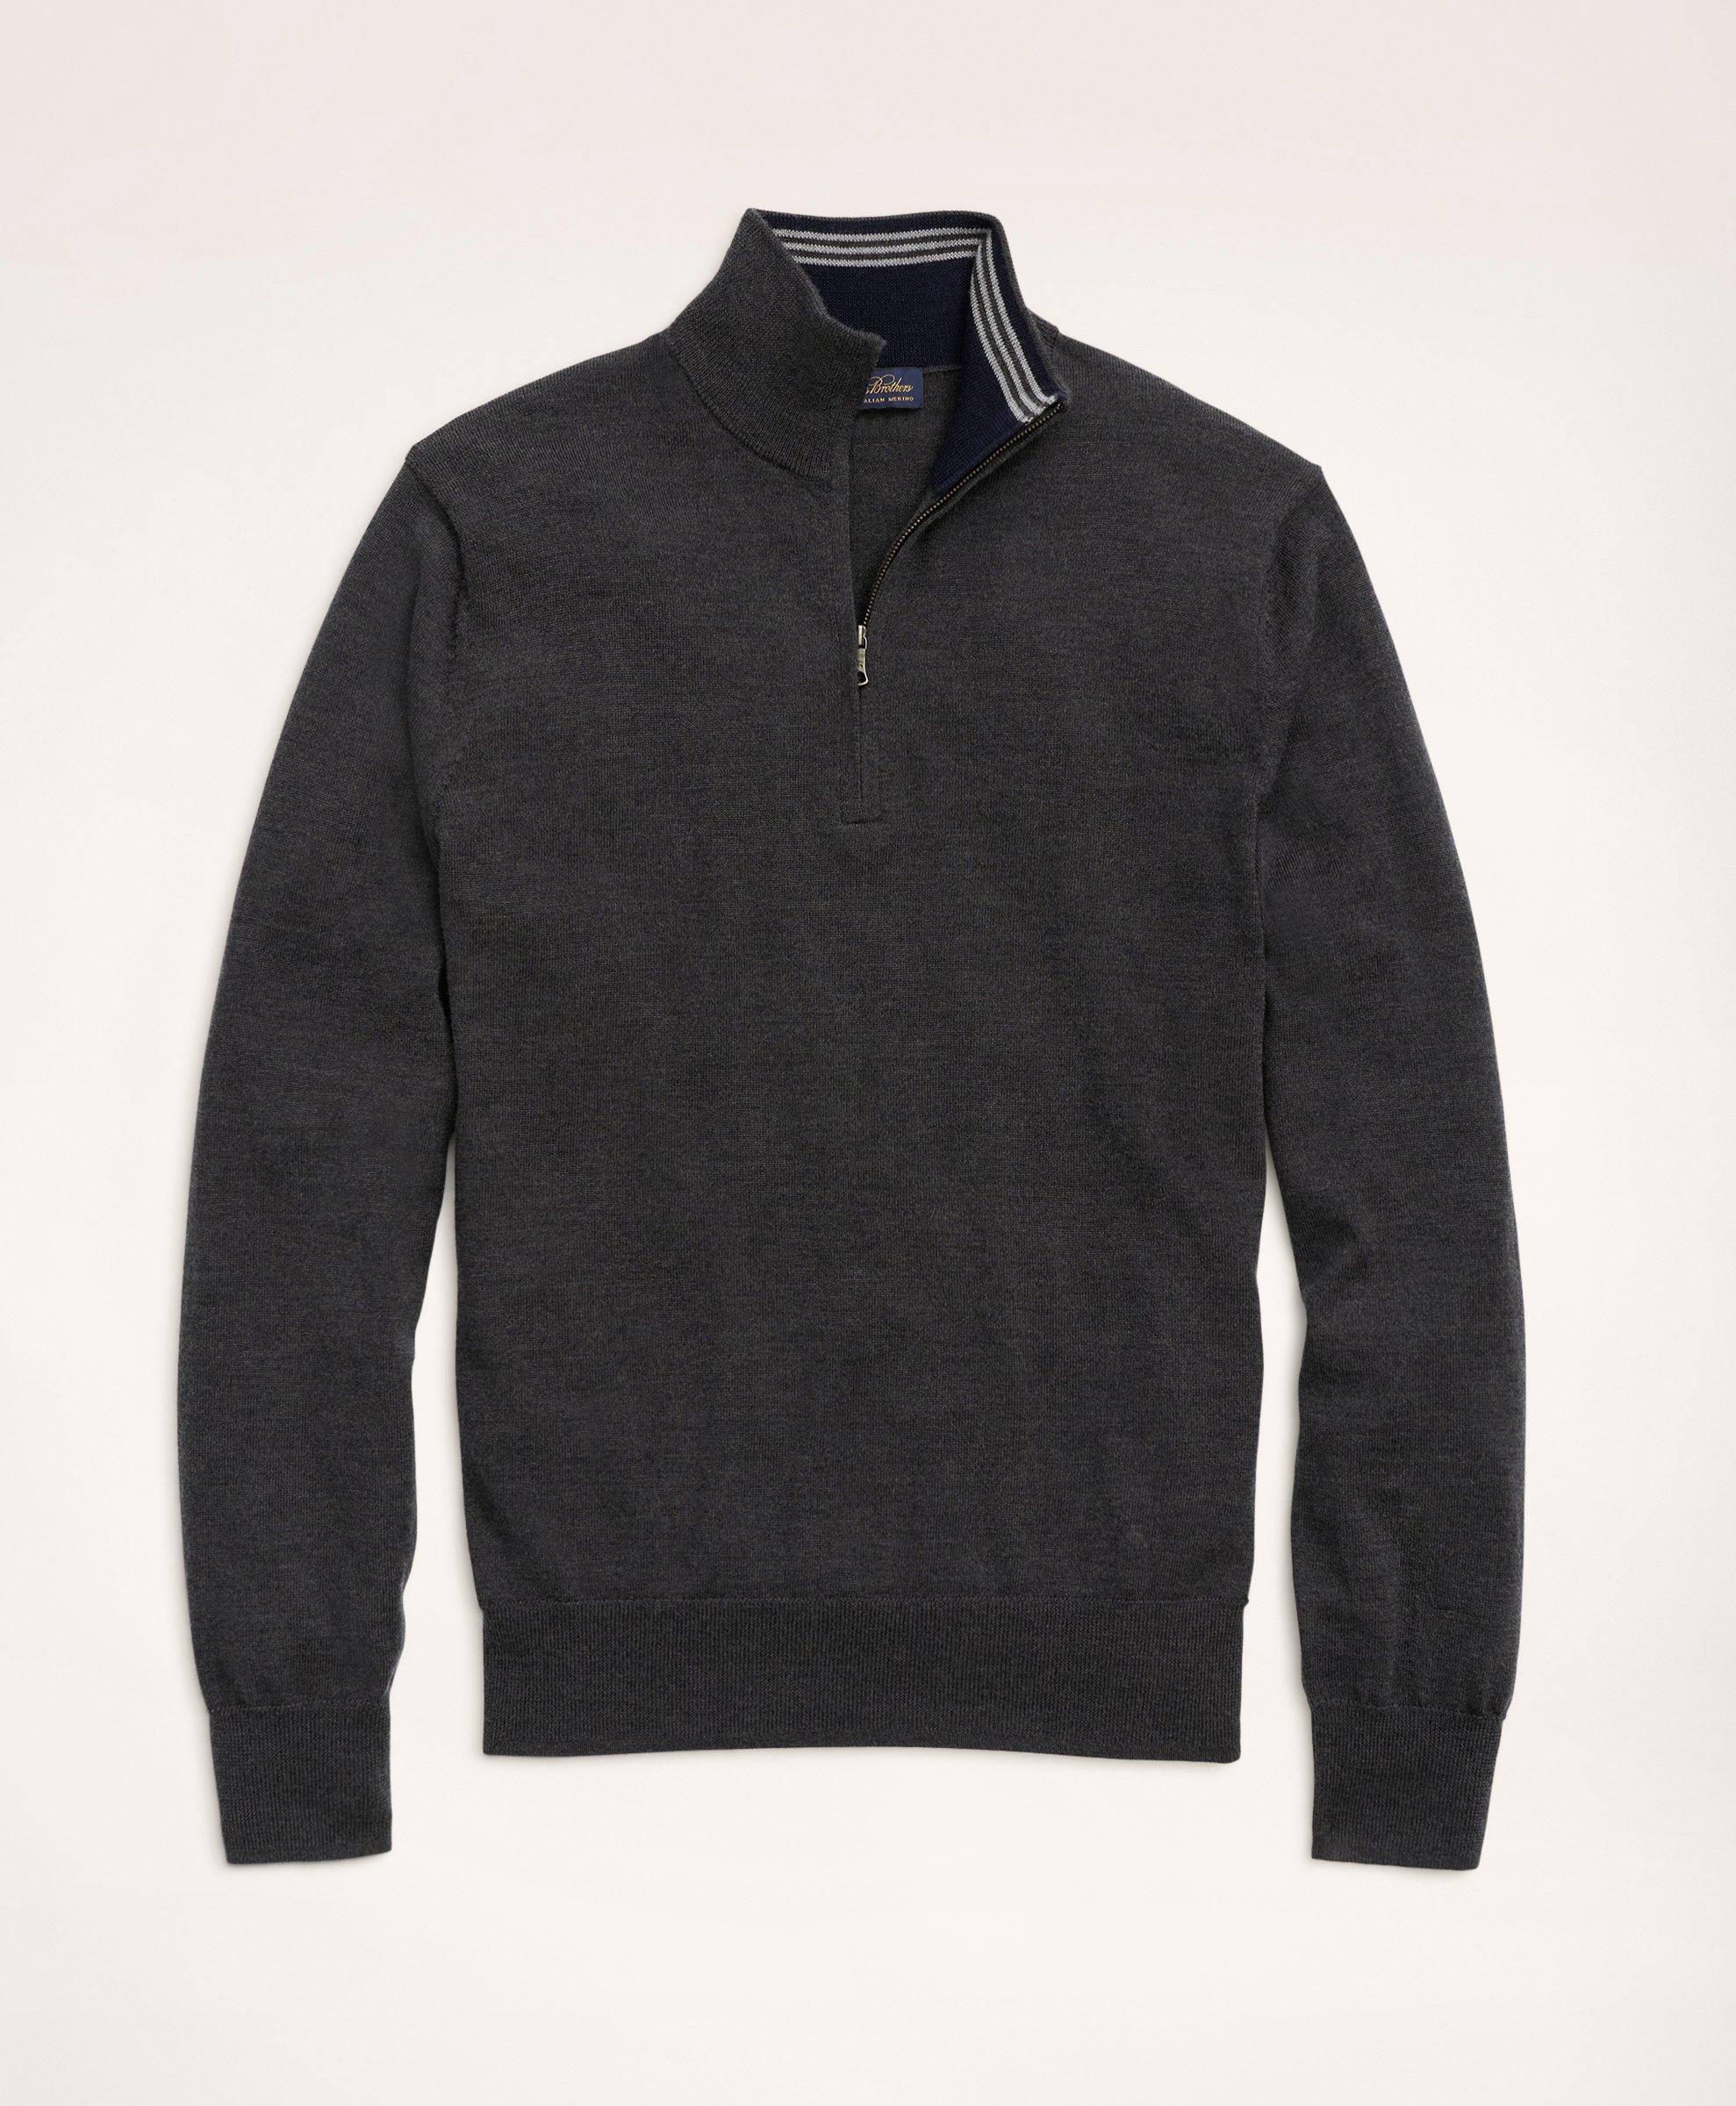 Brooks Brothers Big & Tall Merino Half-zip Sweater | Charcoal | Size 4x Tall